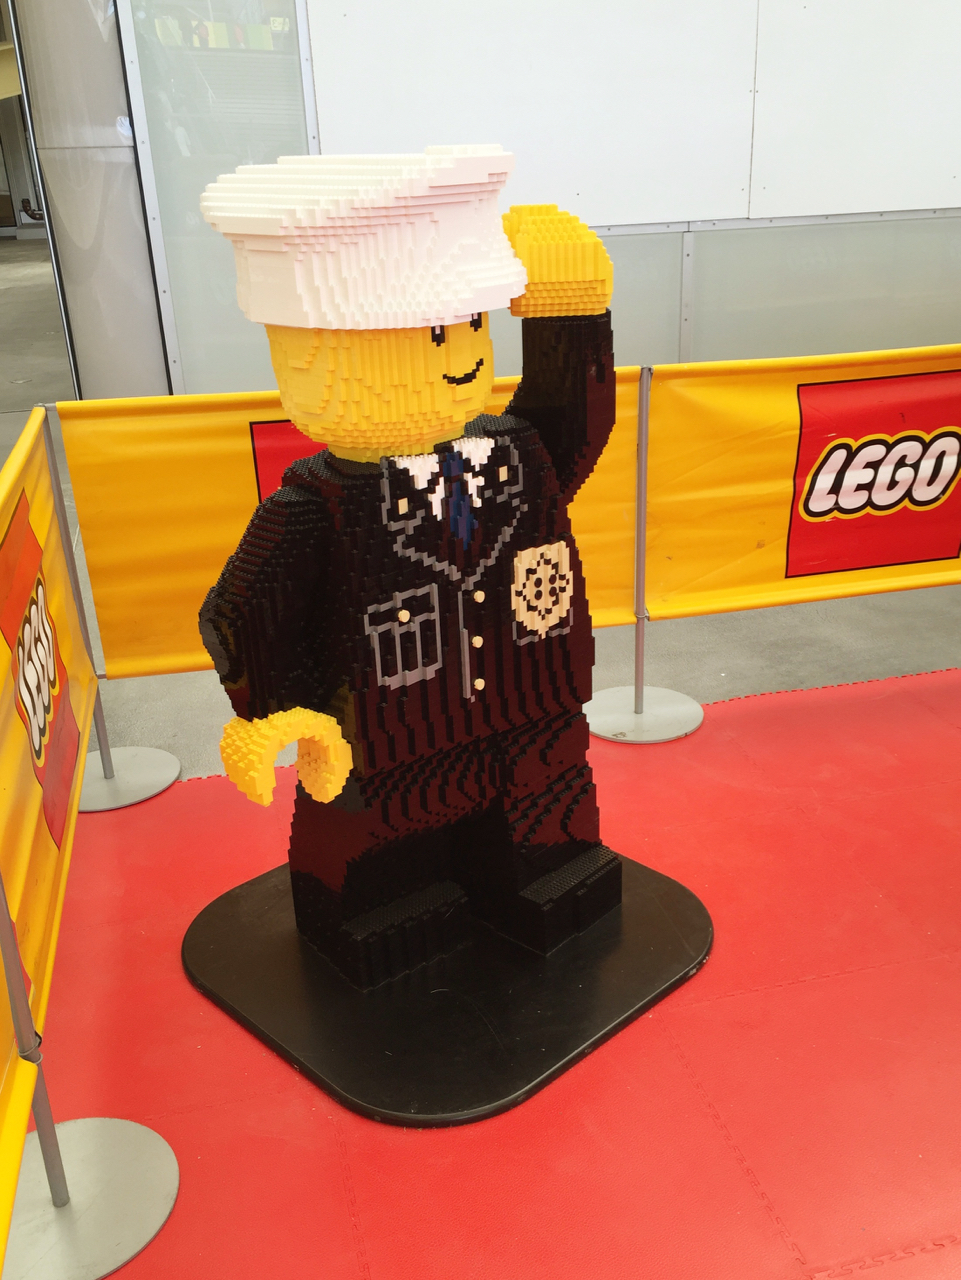 Agent Lego